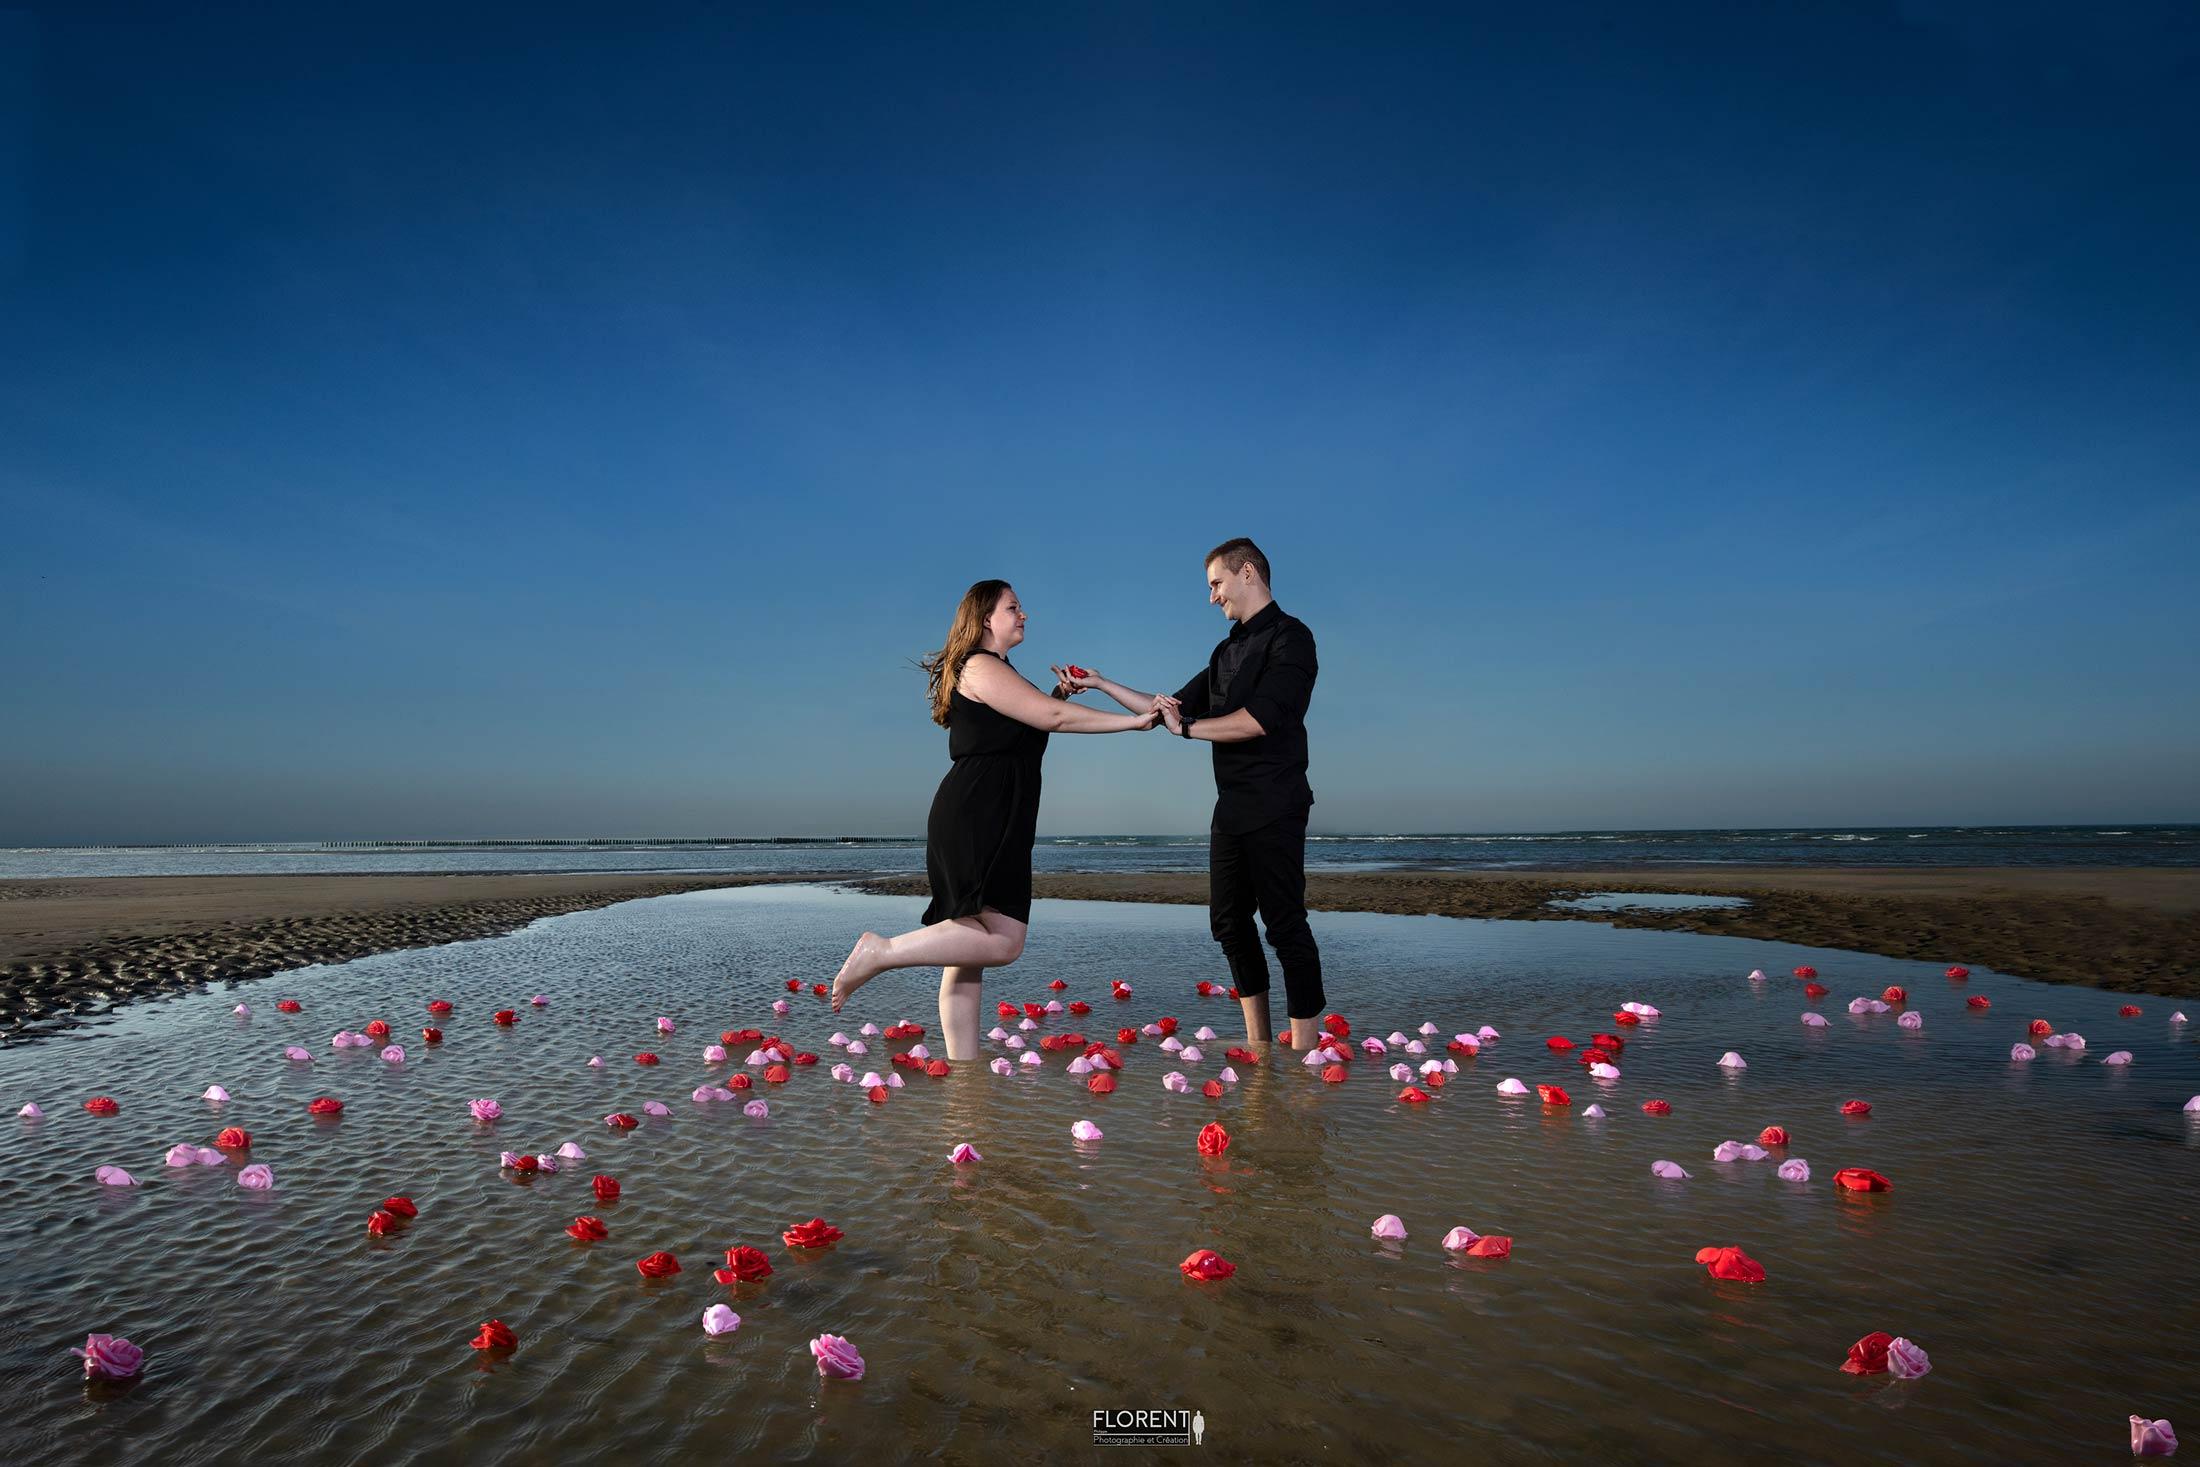 photographe faire part de mariage choisi pour le mariage bord de mer et roses florent photographe boulogne sur mer calais saint omer le touquet paris lille